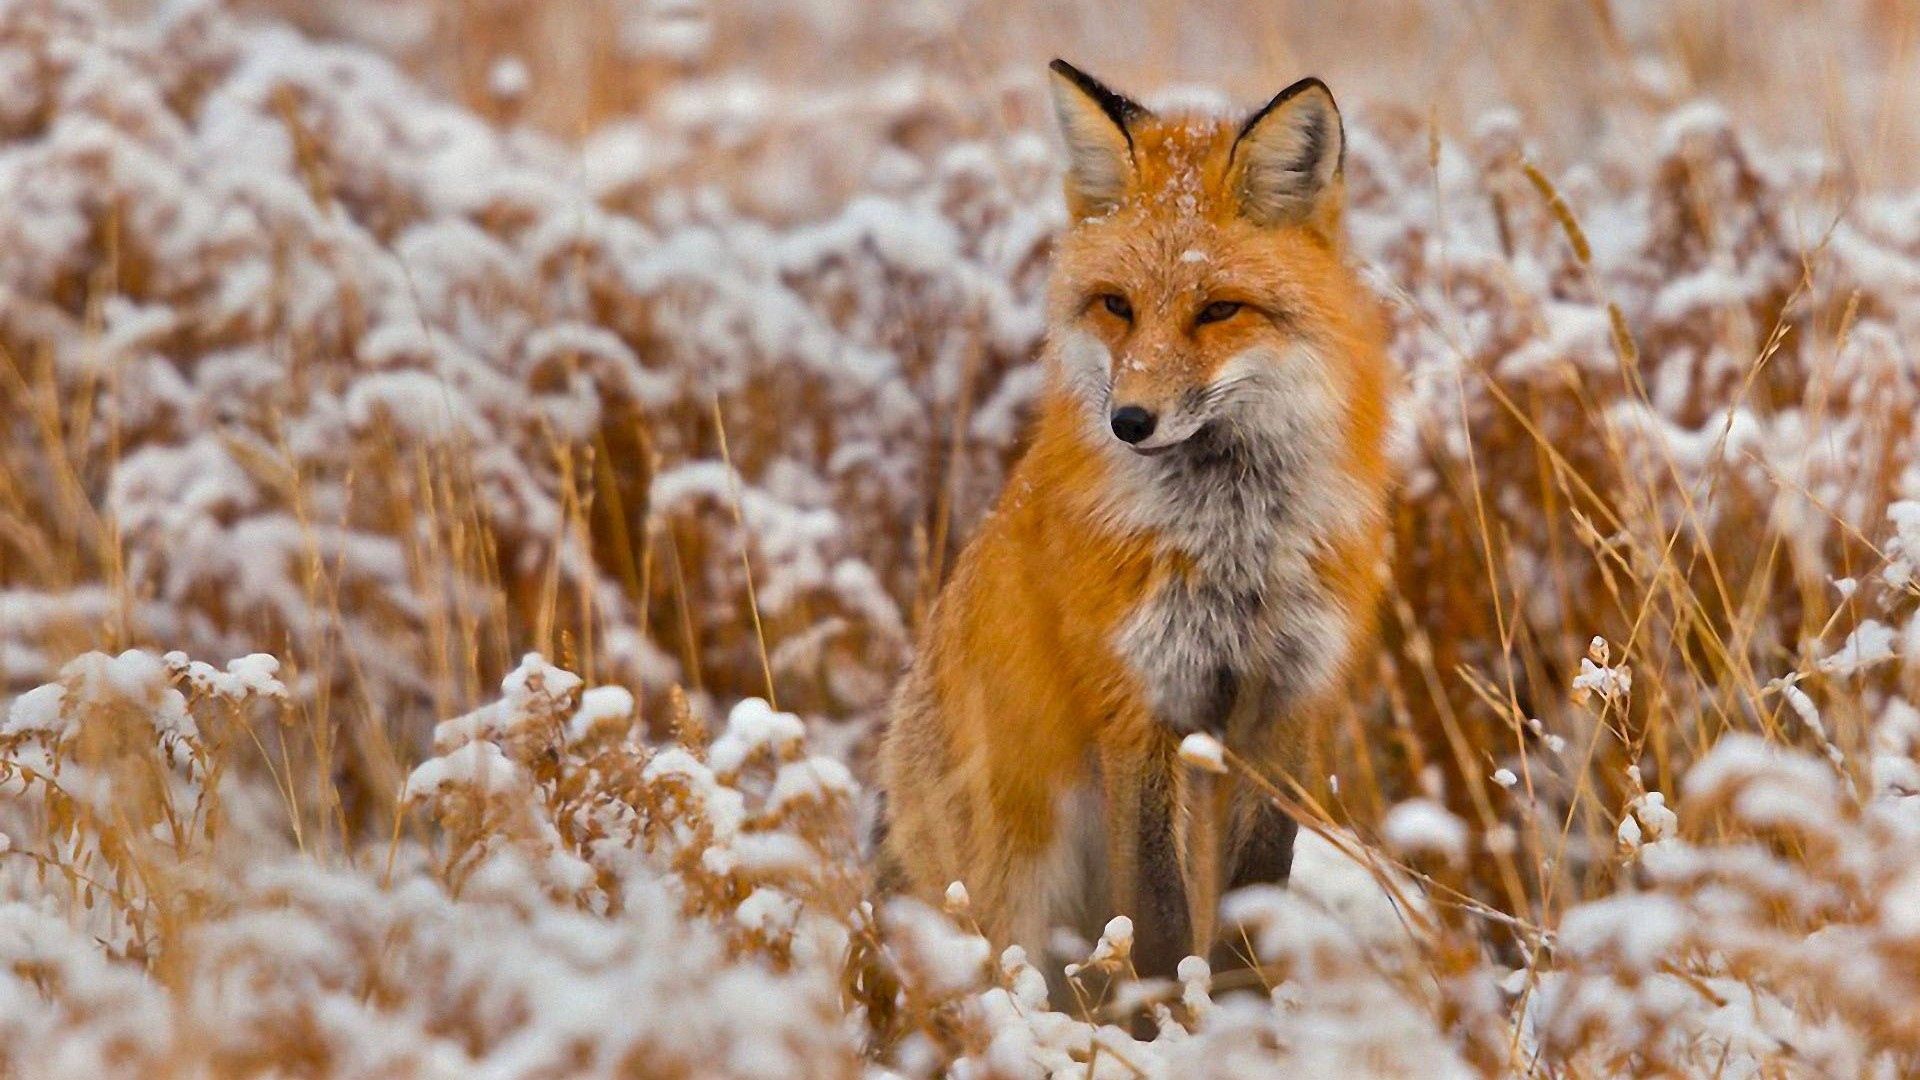 在您的 PC 桌面上免費下載 草, 雪, 坐, 坐下, 打猎, 狩猎, 动物, 一只狐狸, 狐狸 圖片